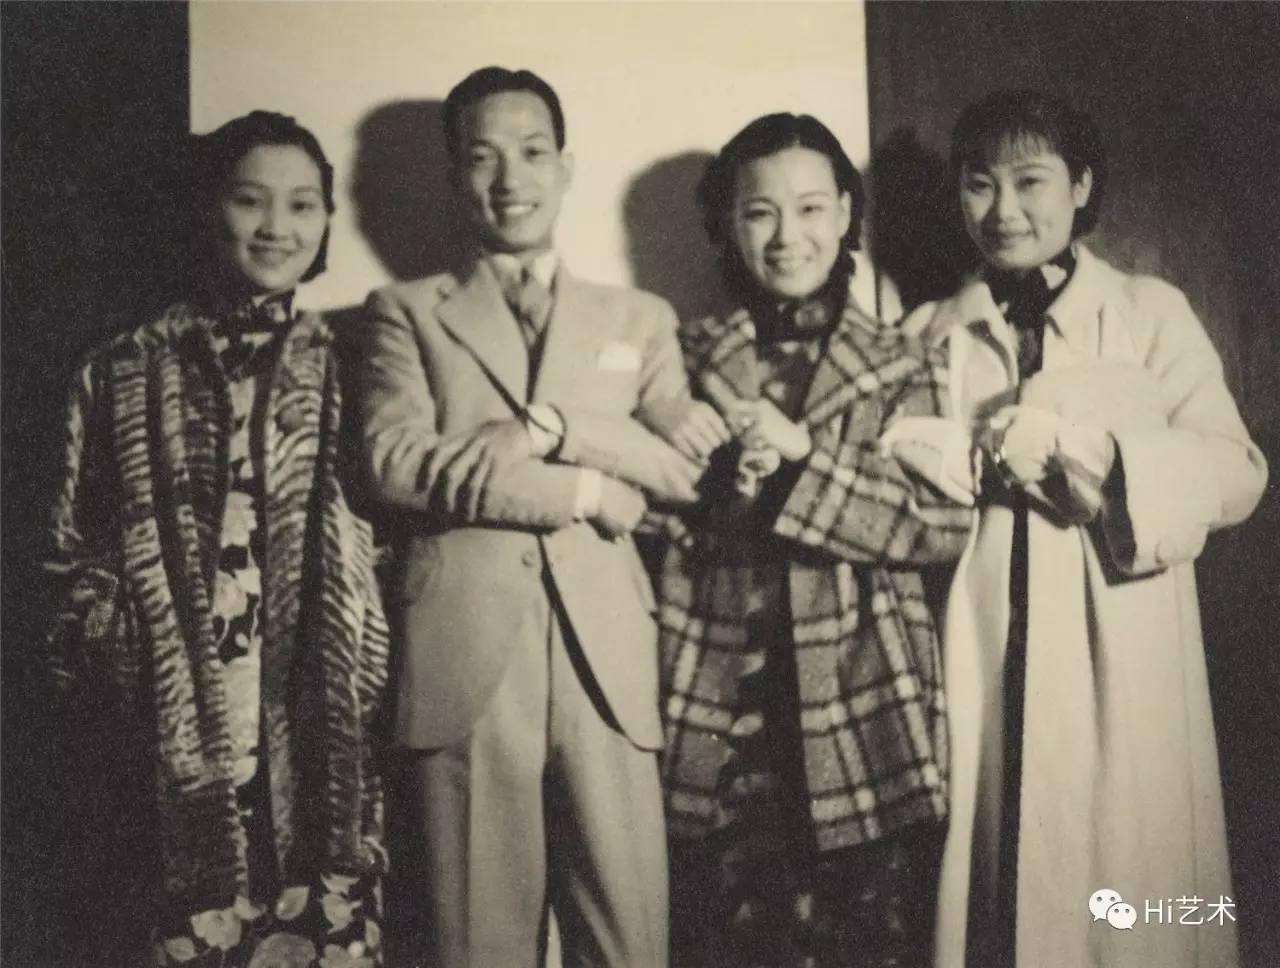 8月10日,"影后胡蝶"展览通过潘氏家族提供的200余张珍贵照片呈现了